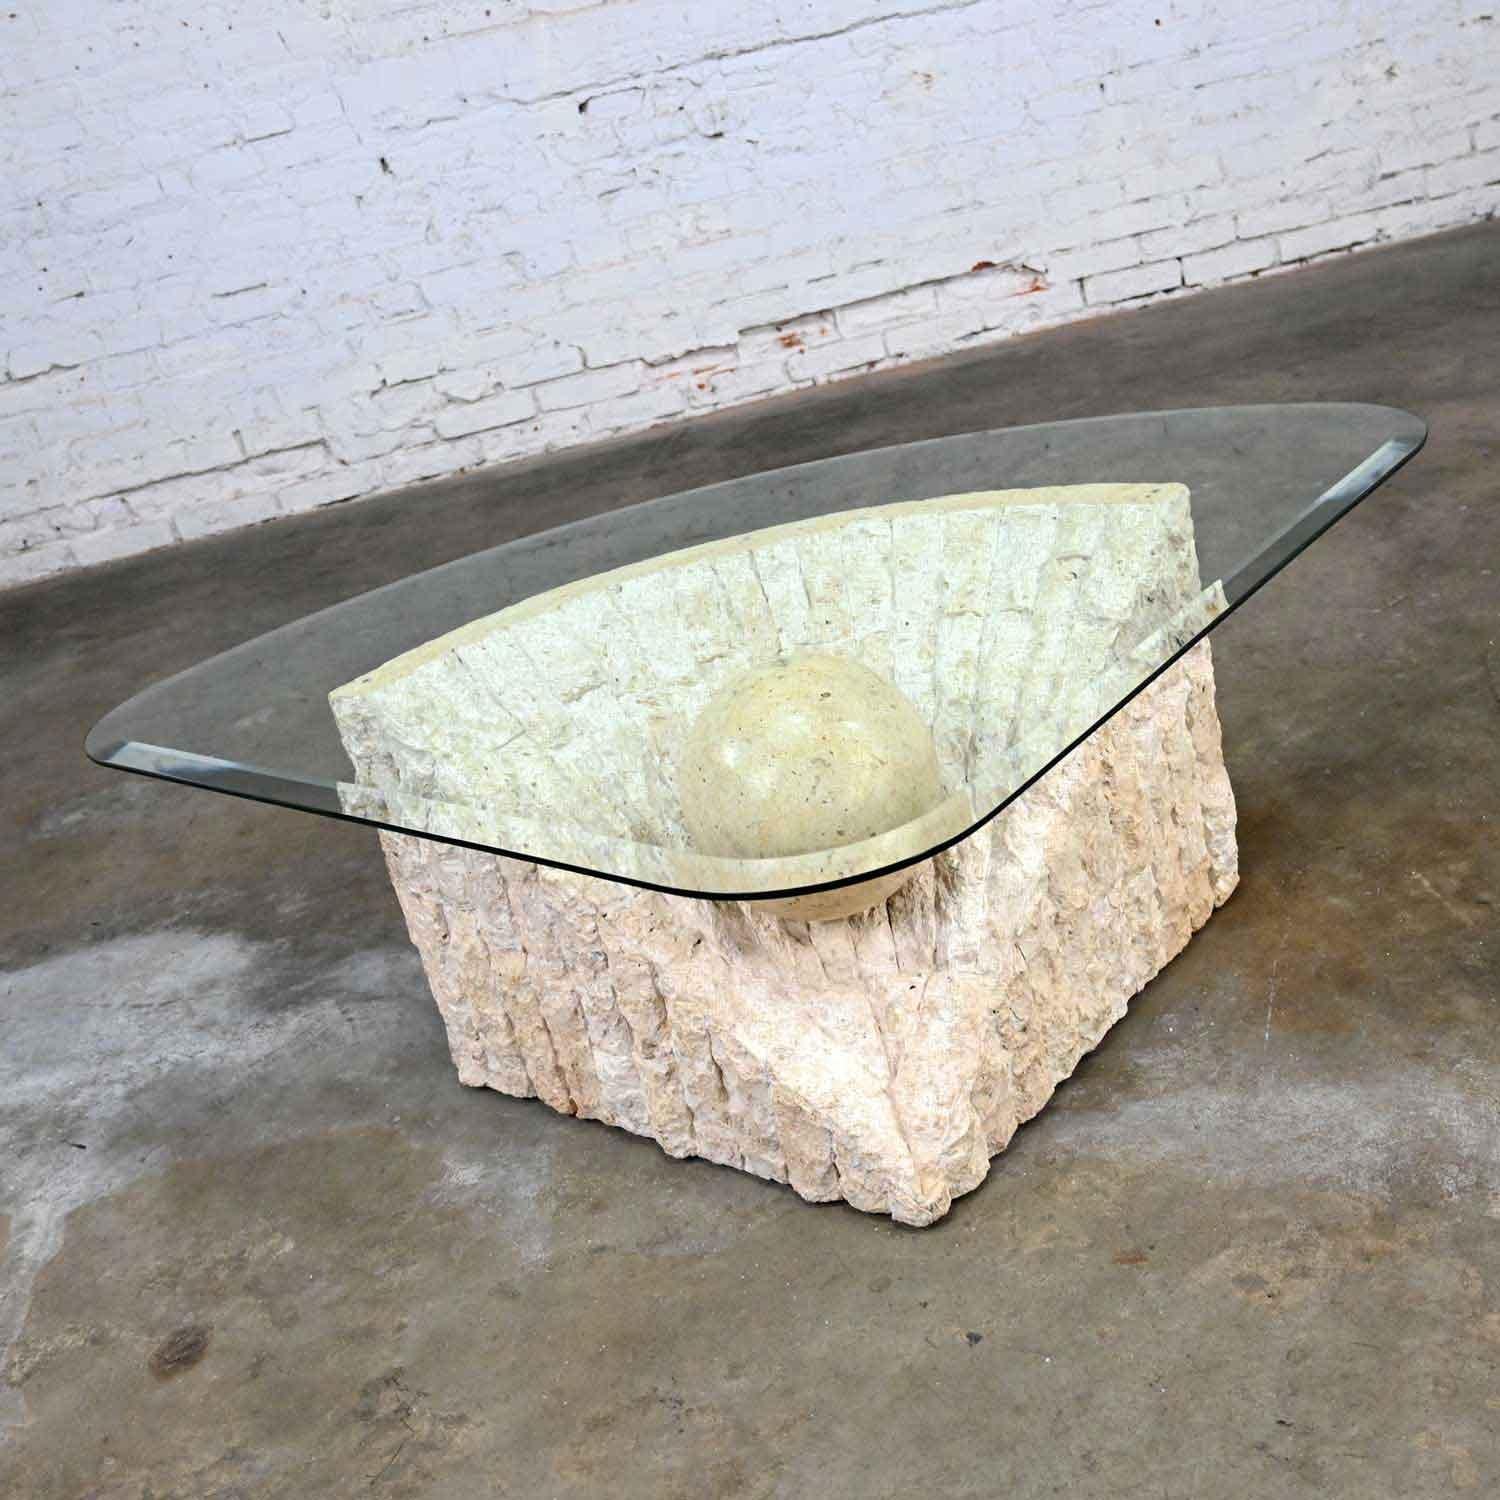 Magnifique table basse postmoderne tessellée Mactan avec base triangulaire en pierre à bord brut et plateau triangulaire en verre avec une grande sphère polie dans le style de Maitland Smith. Très bon état, tout en gardant à l'esprit qu'il s'agit